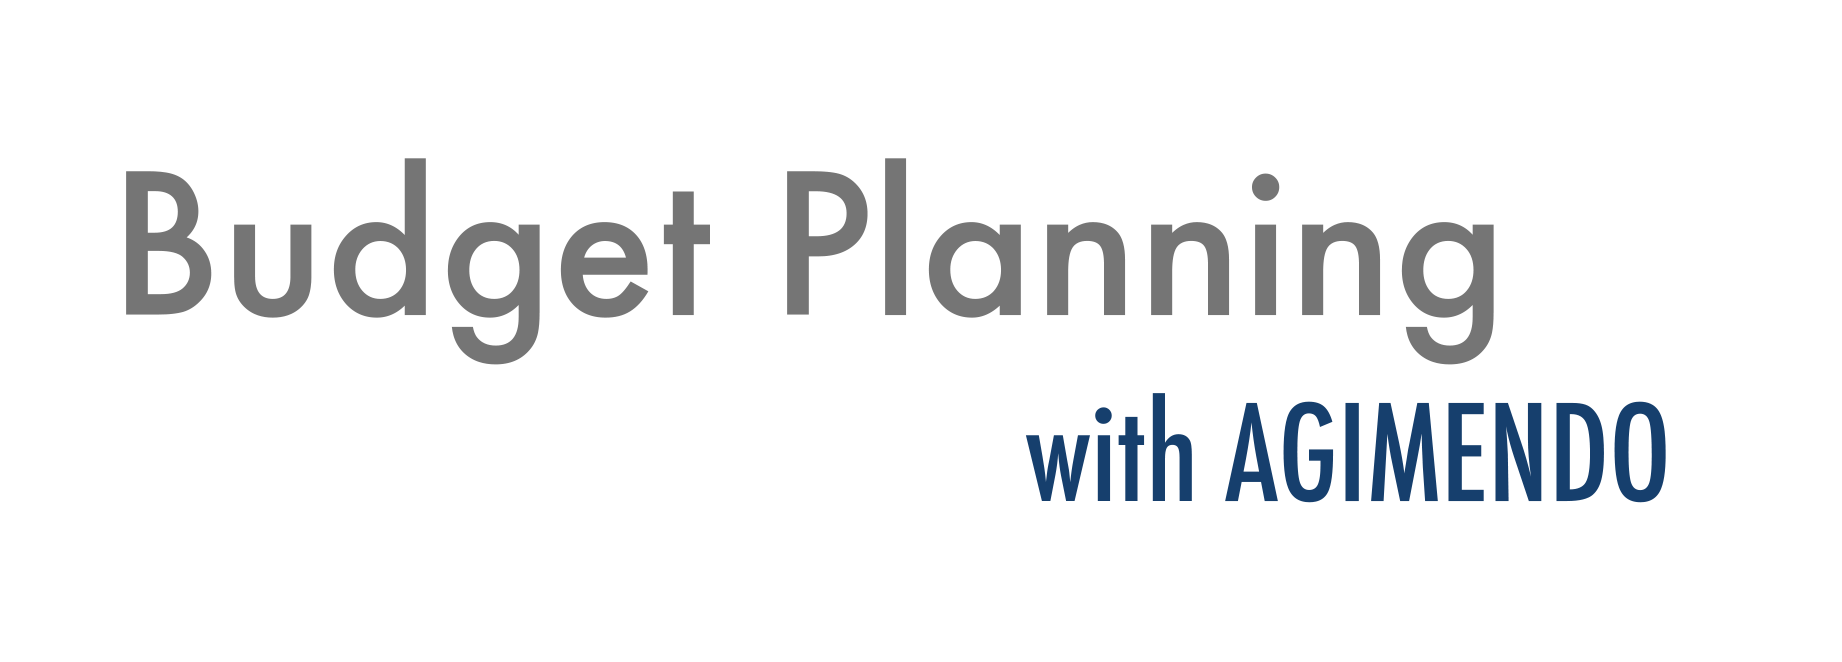 AGIMENDO.lösungen_budget-planning